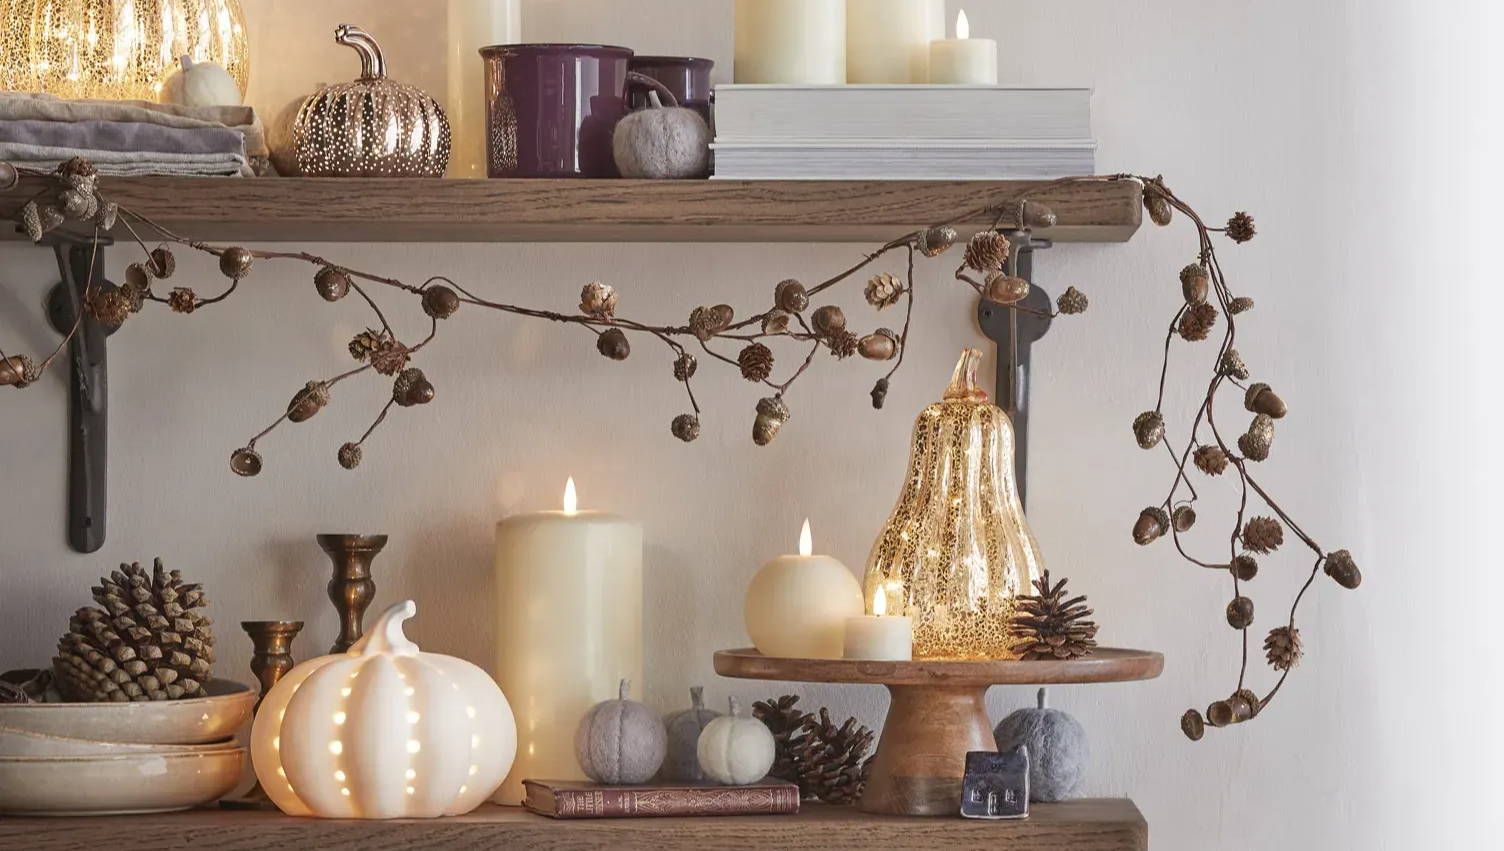 An autumnal shelf setting with an autumn garland and pumpkin decor.